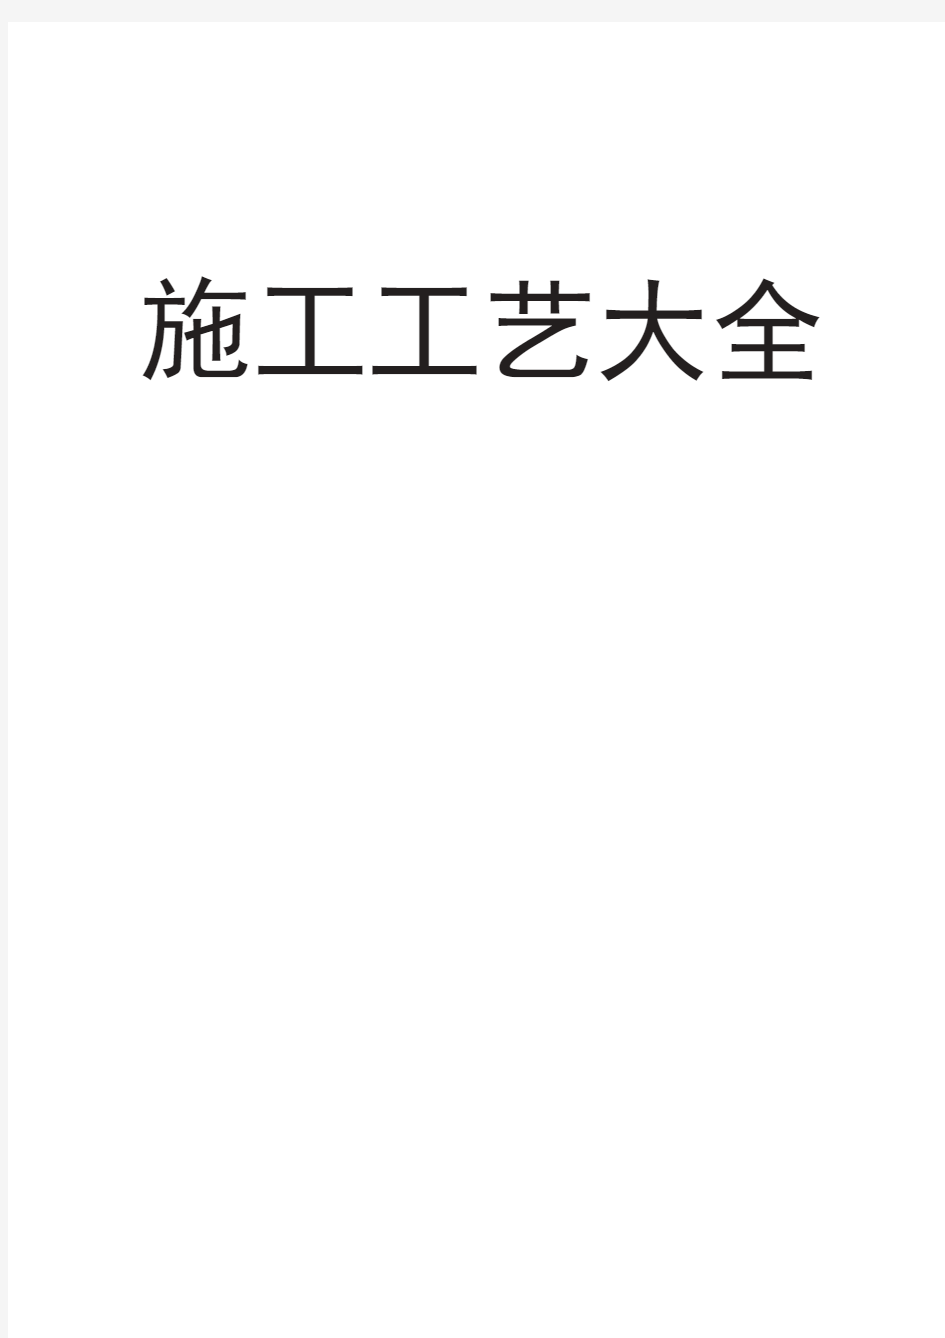 施工工艺大全(最新版)PDF可编辑